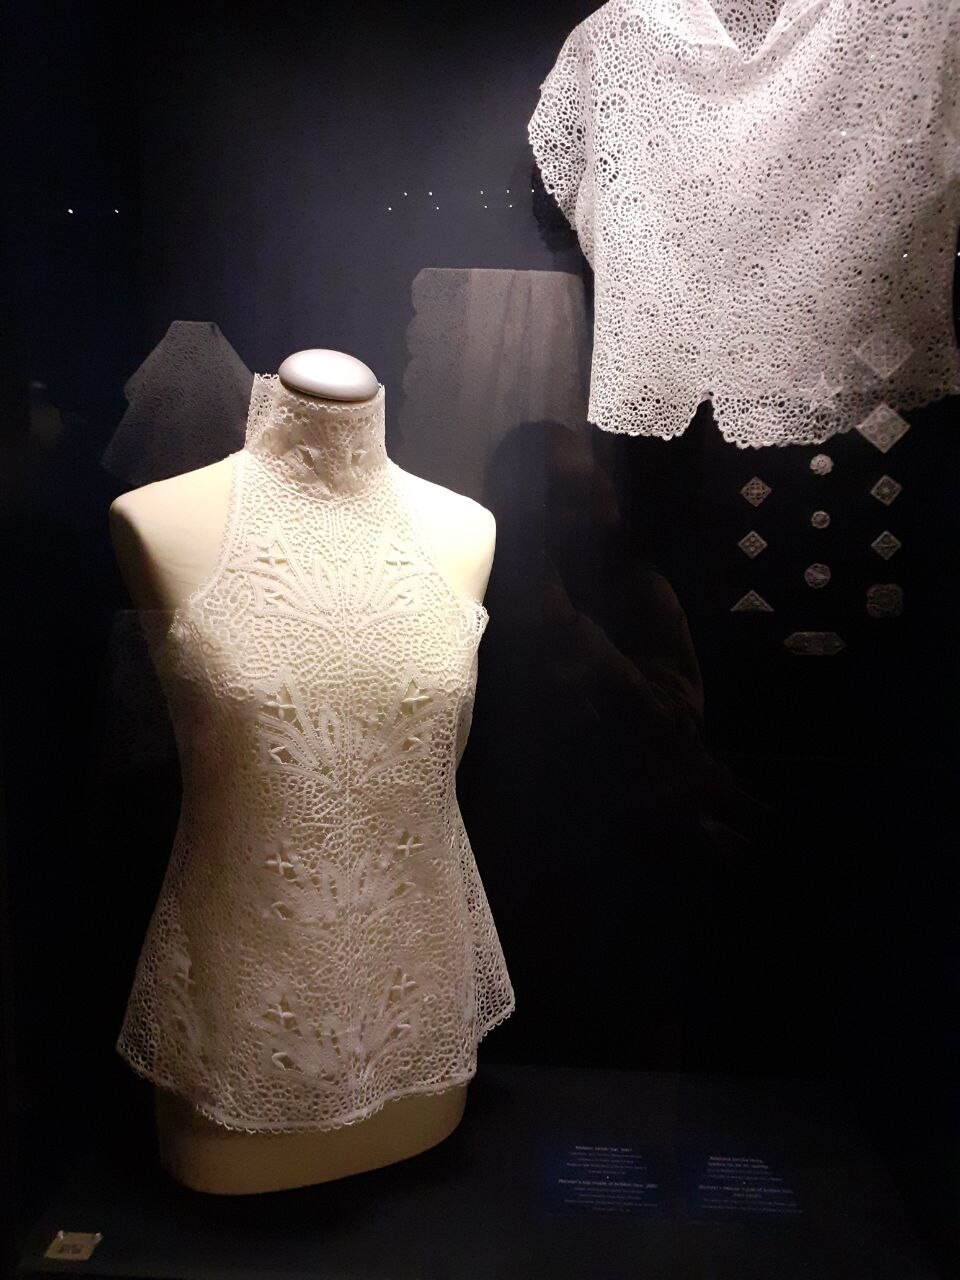 Idrijska čipka, Mestni muzej Idrija